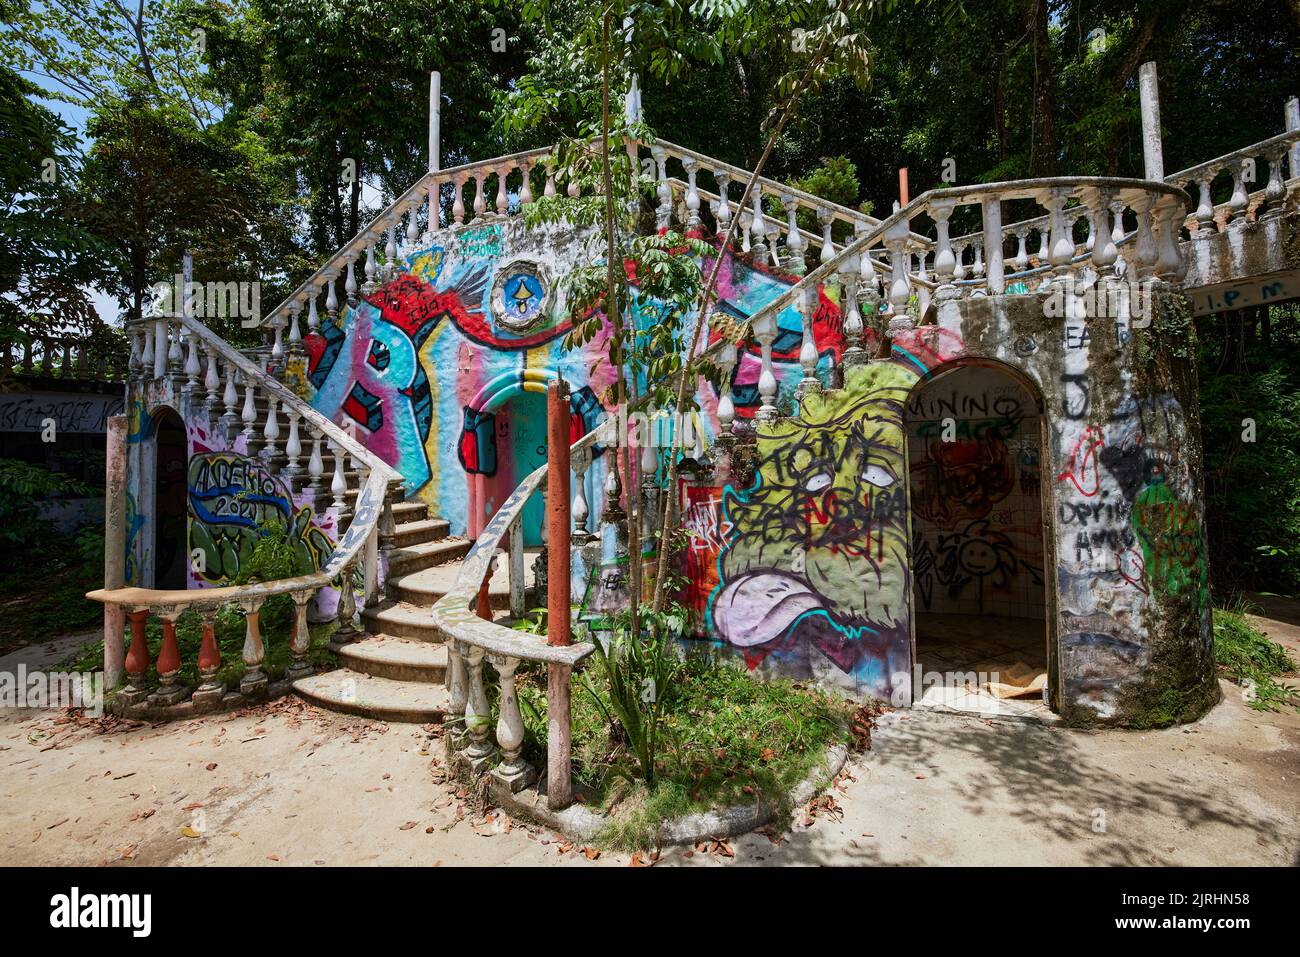 Un graffiti de rue sur les escaliers abandonnés à Playa Hermosa, Costa Rica Banque D'Images